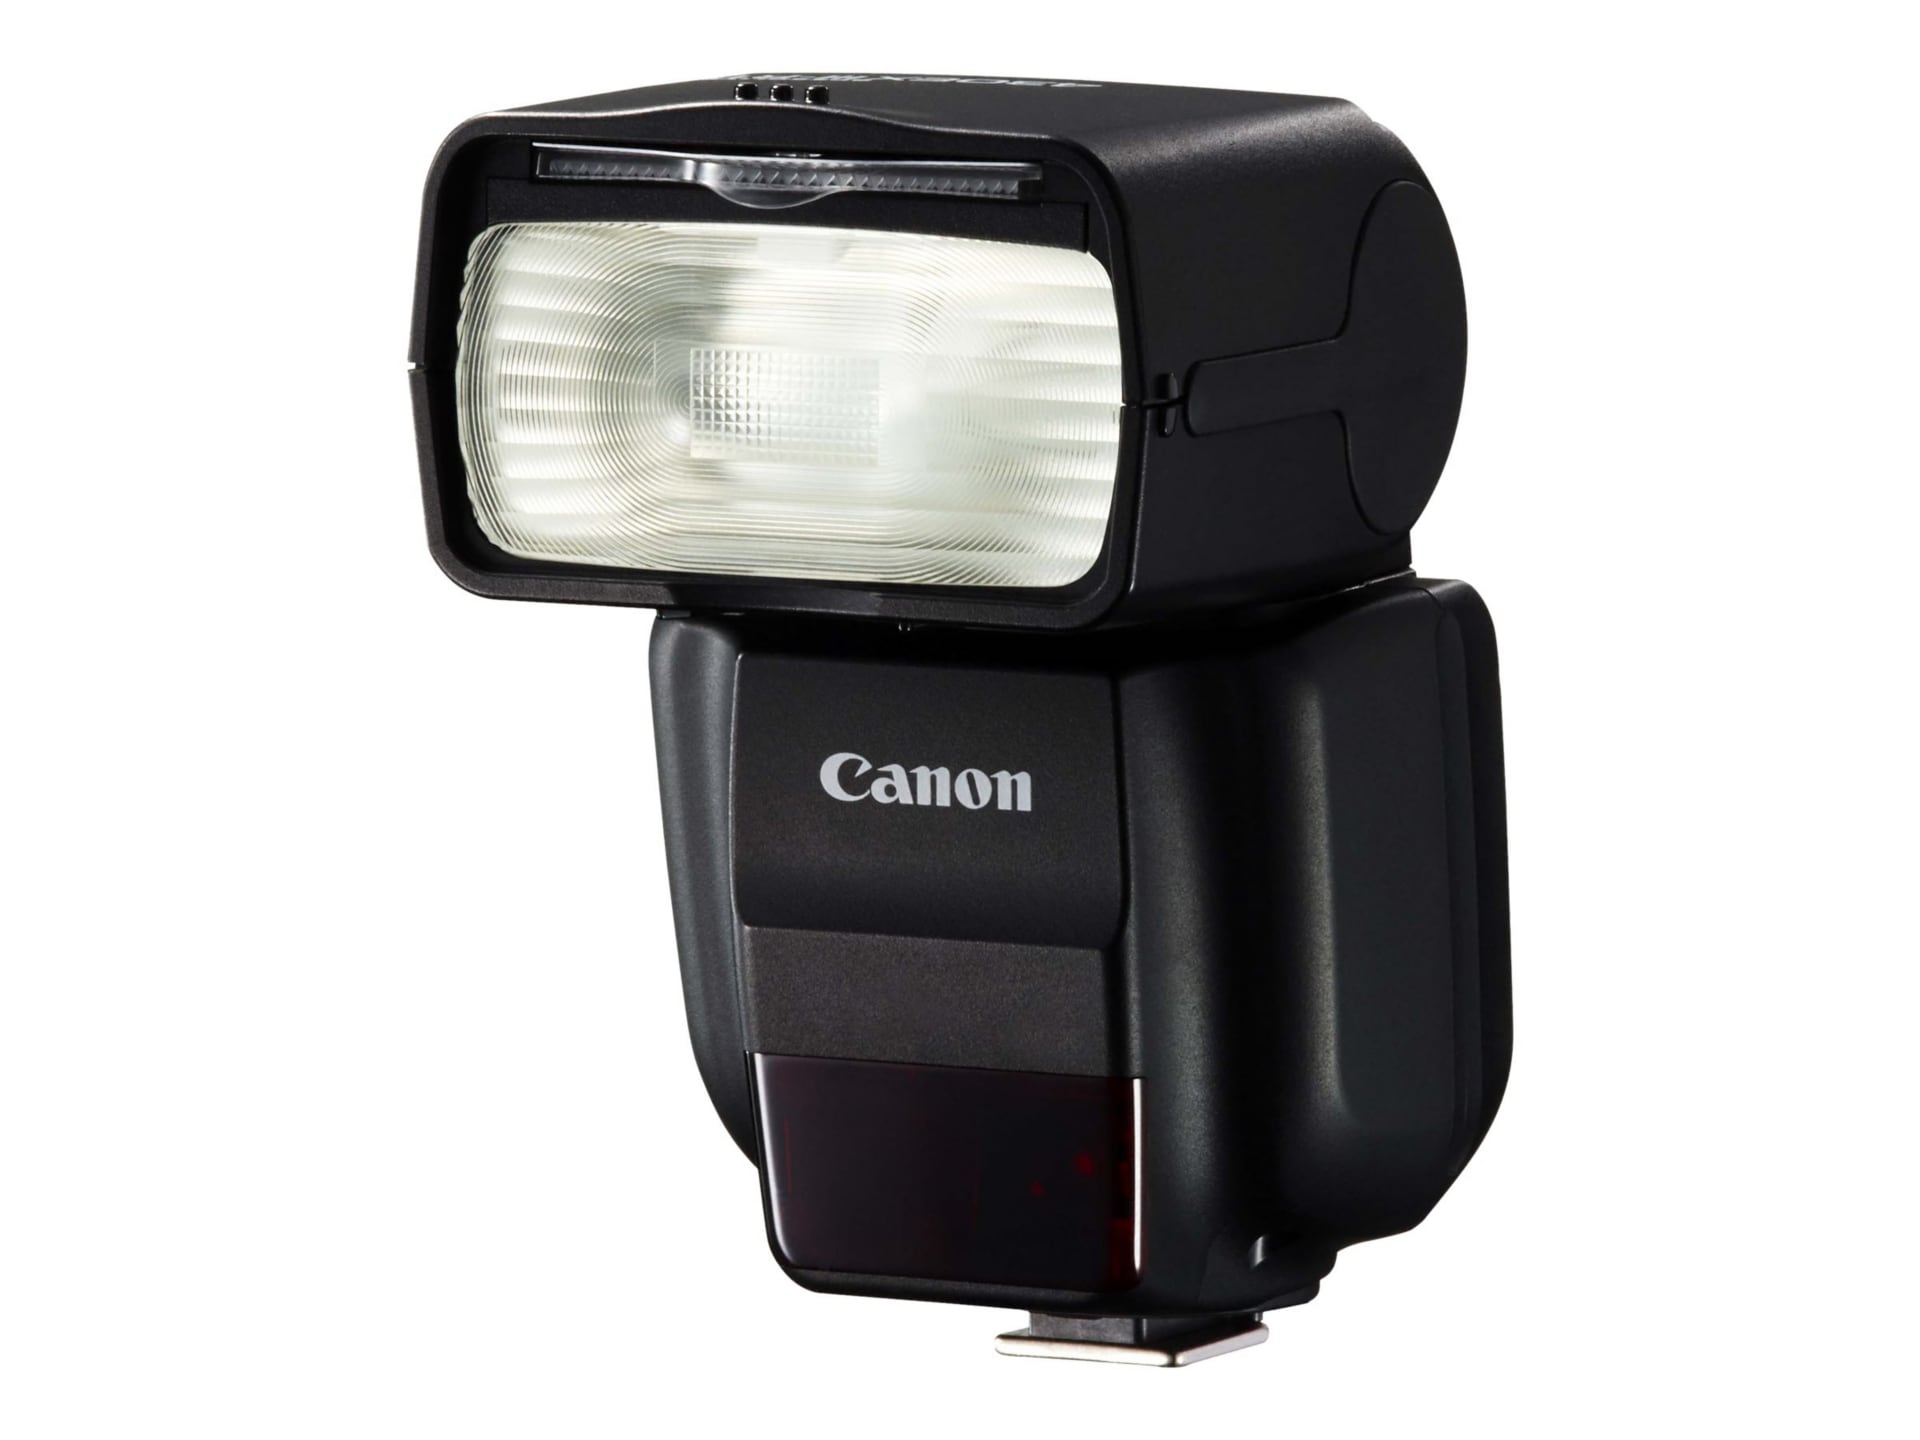 Subir audición parque Canon Speedlite 430EX III-RT - hot-shoe clip-on flash - 0585C003 - Camera &  Video Accessories - CDW.com